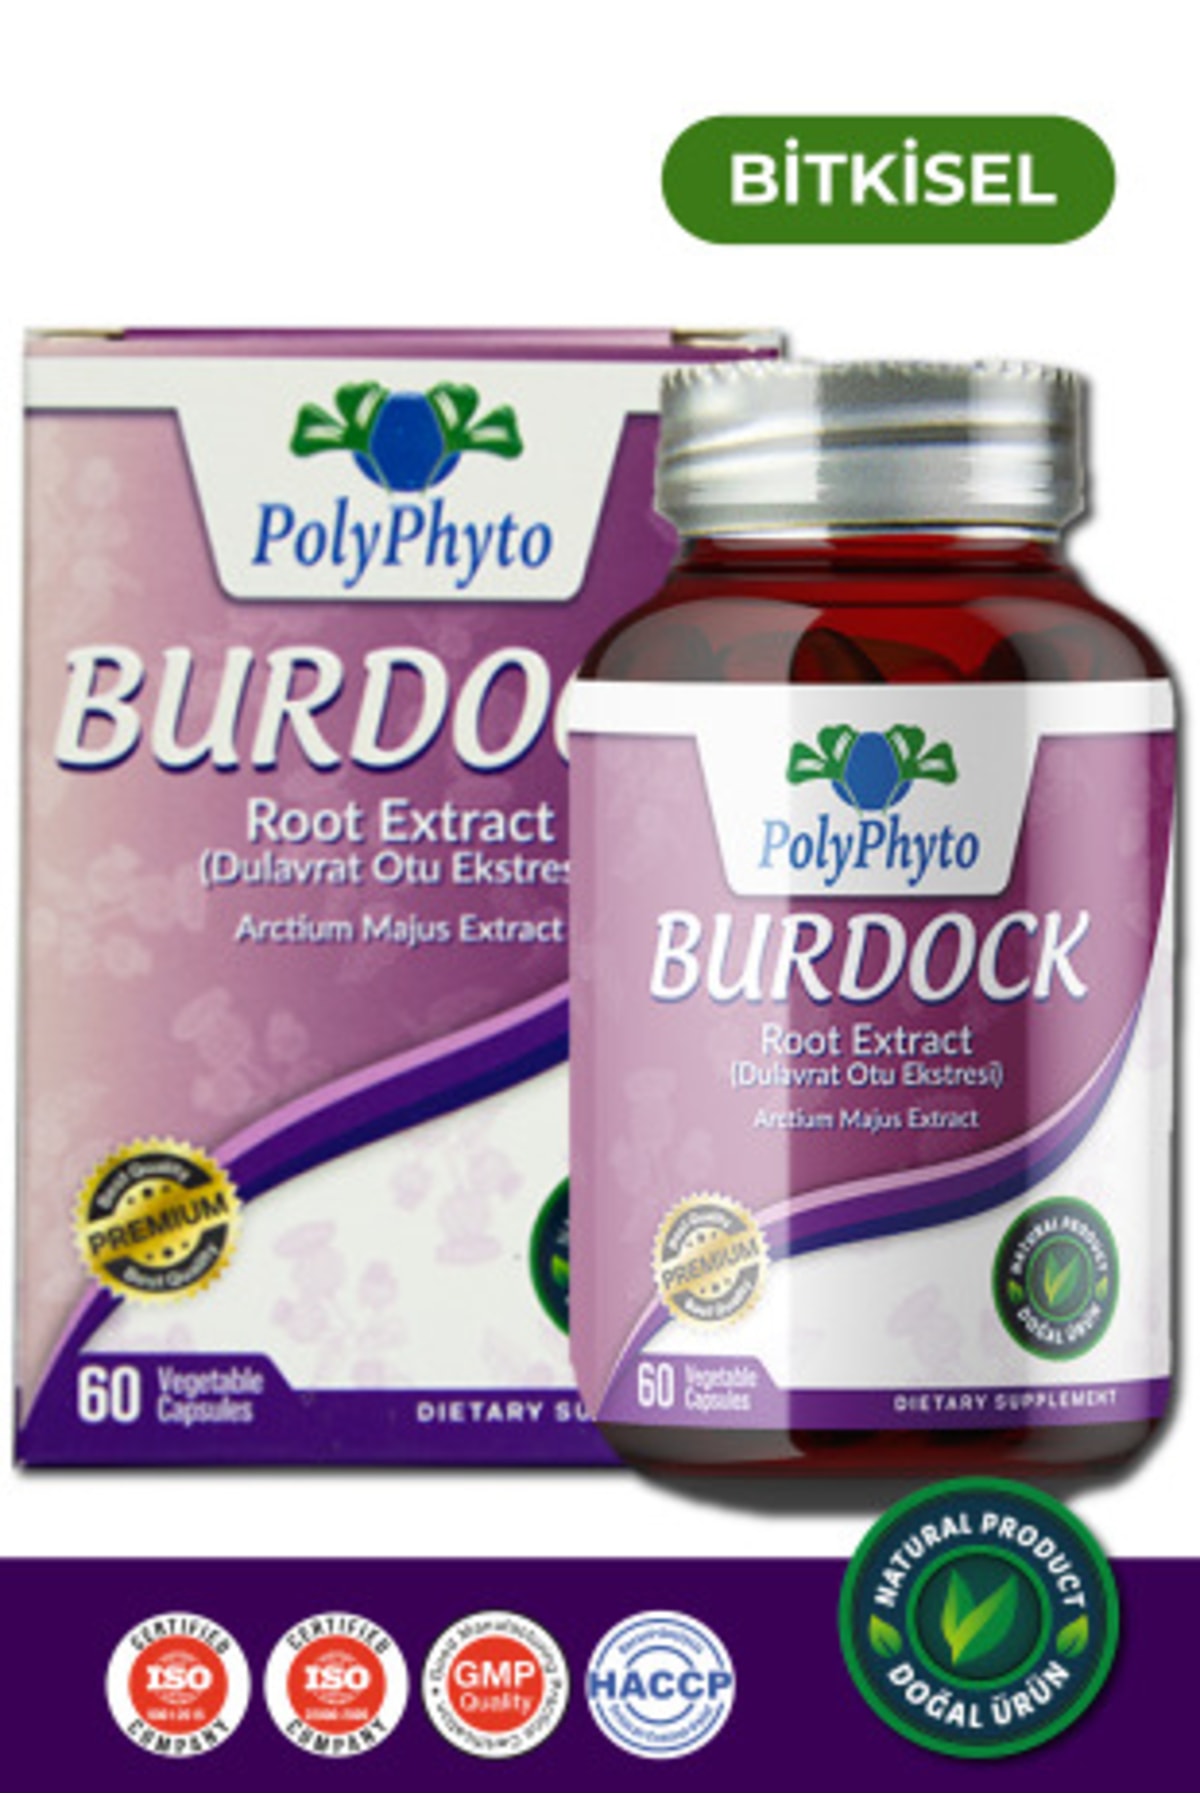 PolyPhyto Burdock Root Extract (Dulavrat Otu Ekstresi) 60 Bitkisel Kapsül